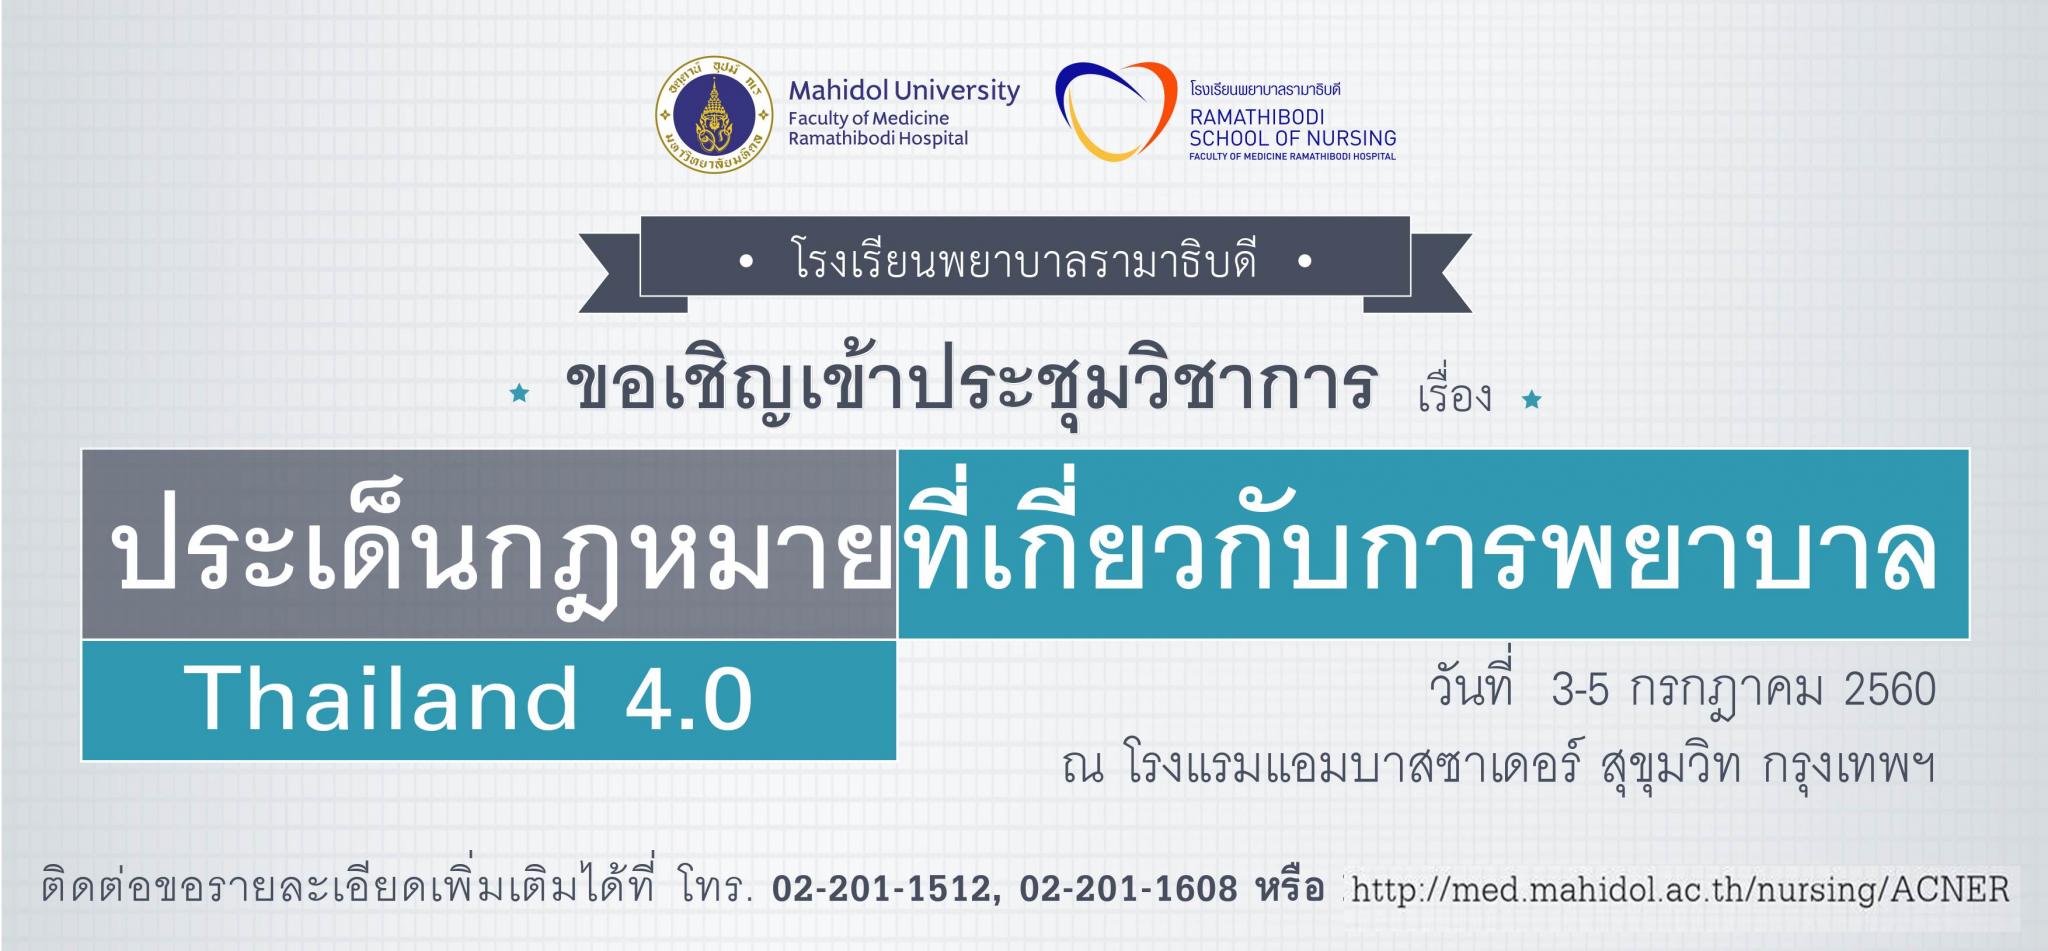 ขอเชิญเข้าร่วมการประชุมวิชาการเรื่อง ประเด็นกฎหมายที่เกี่ยวกับการพยาบาลยุค Thailand 4.0